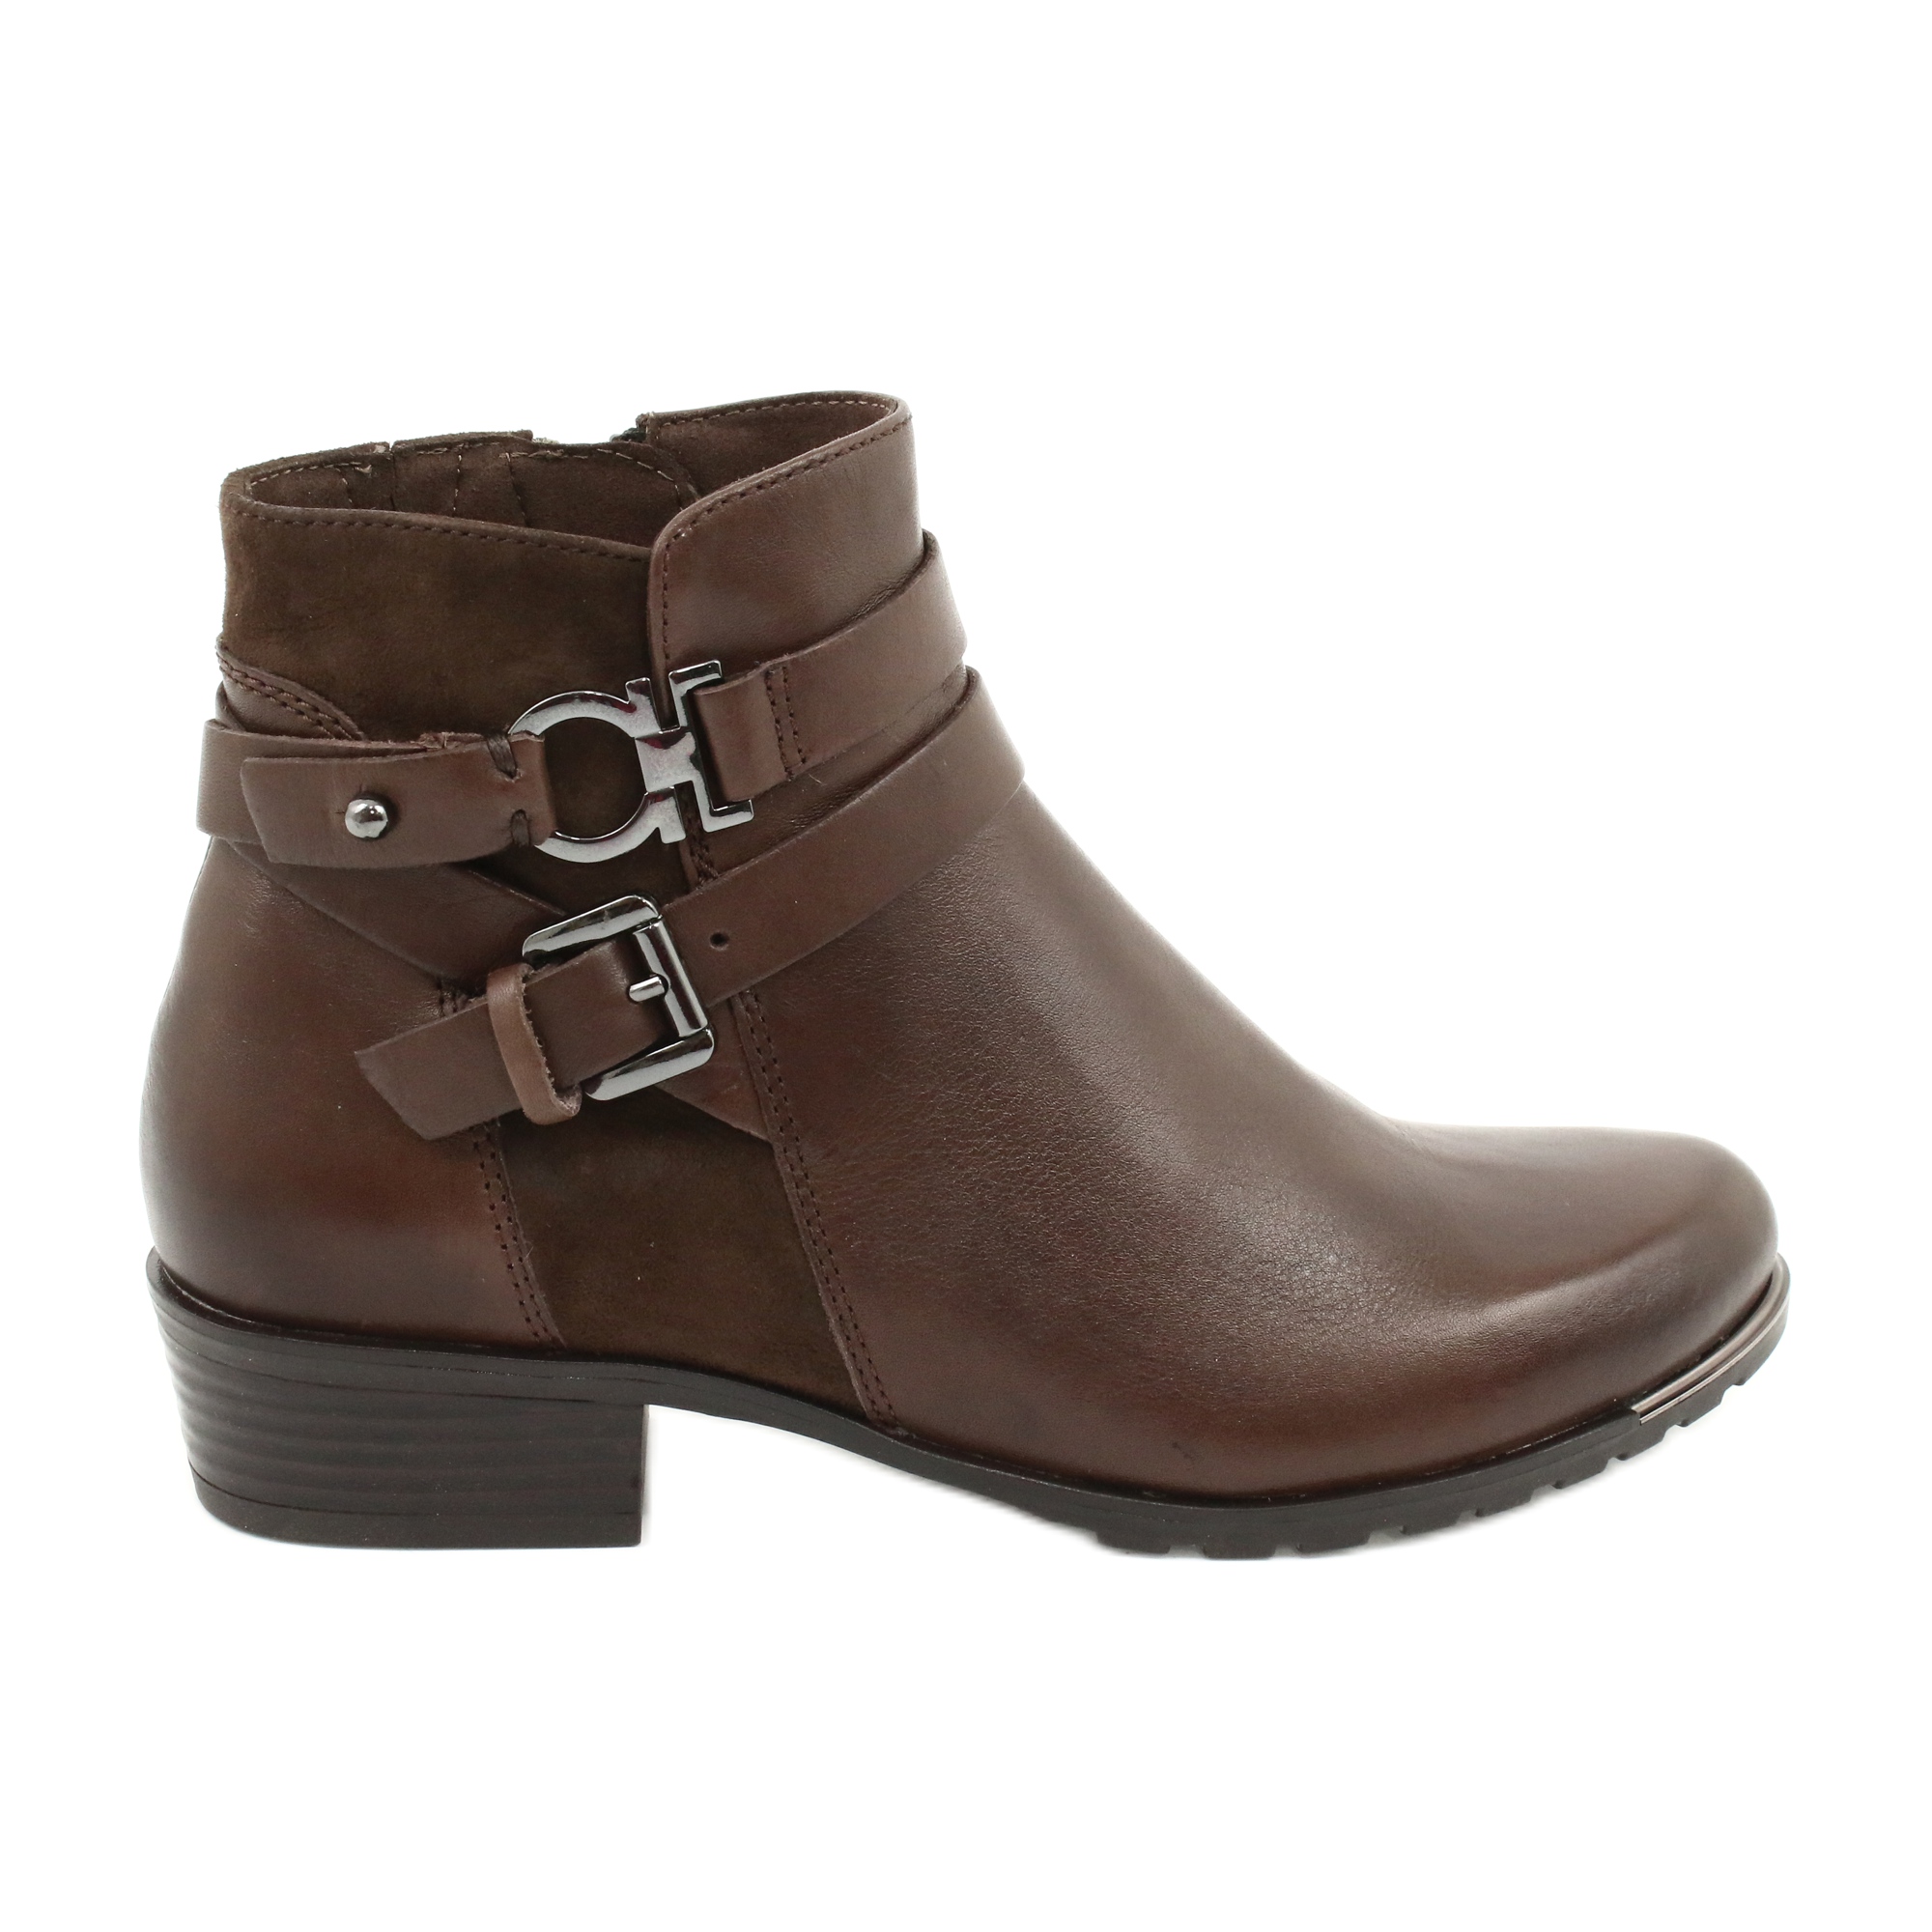 Caprice støvler til kvinder brun 924 - KeeShoes